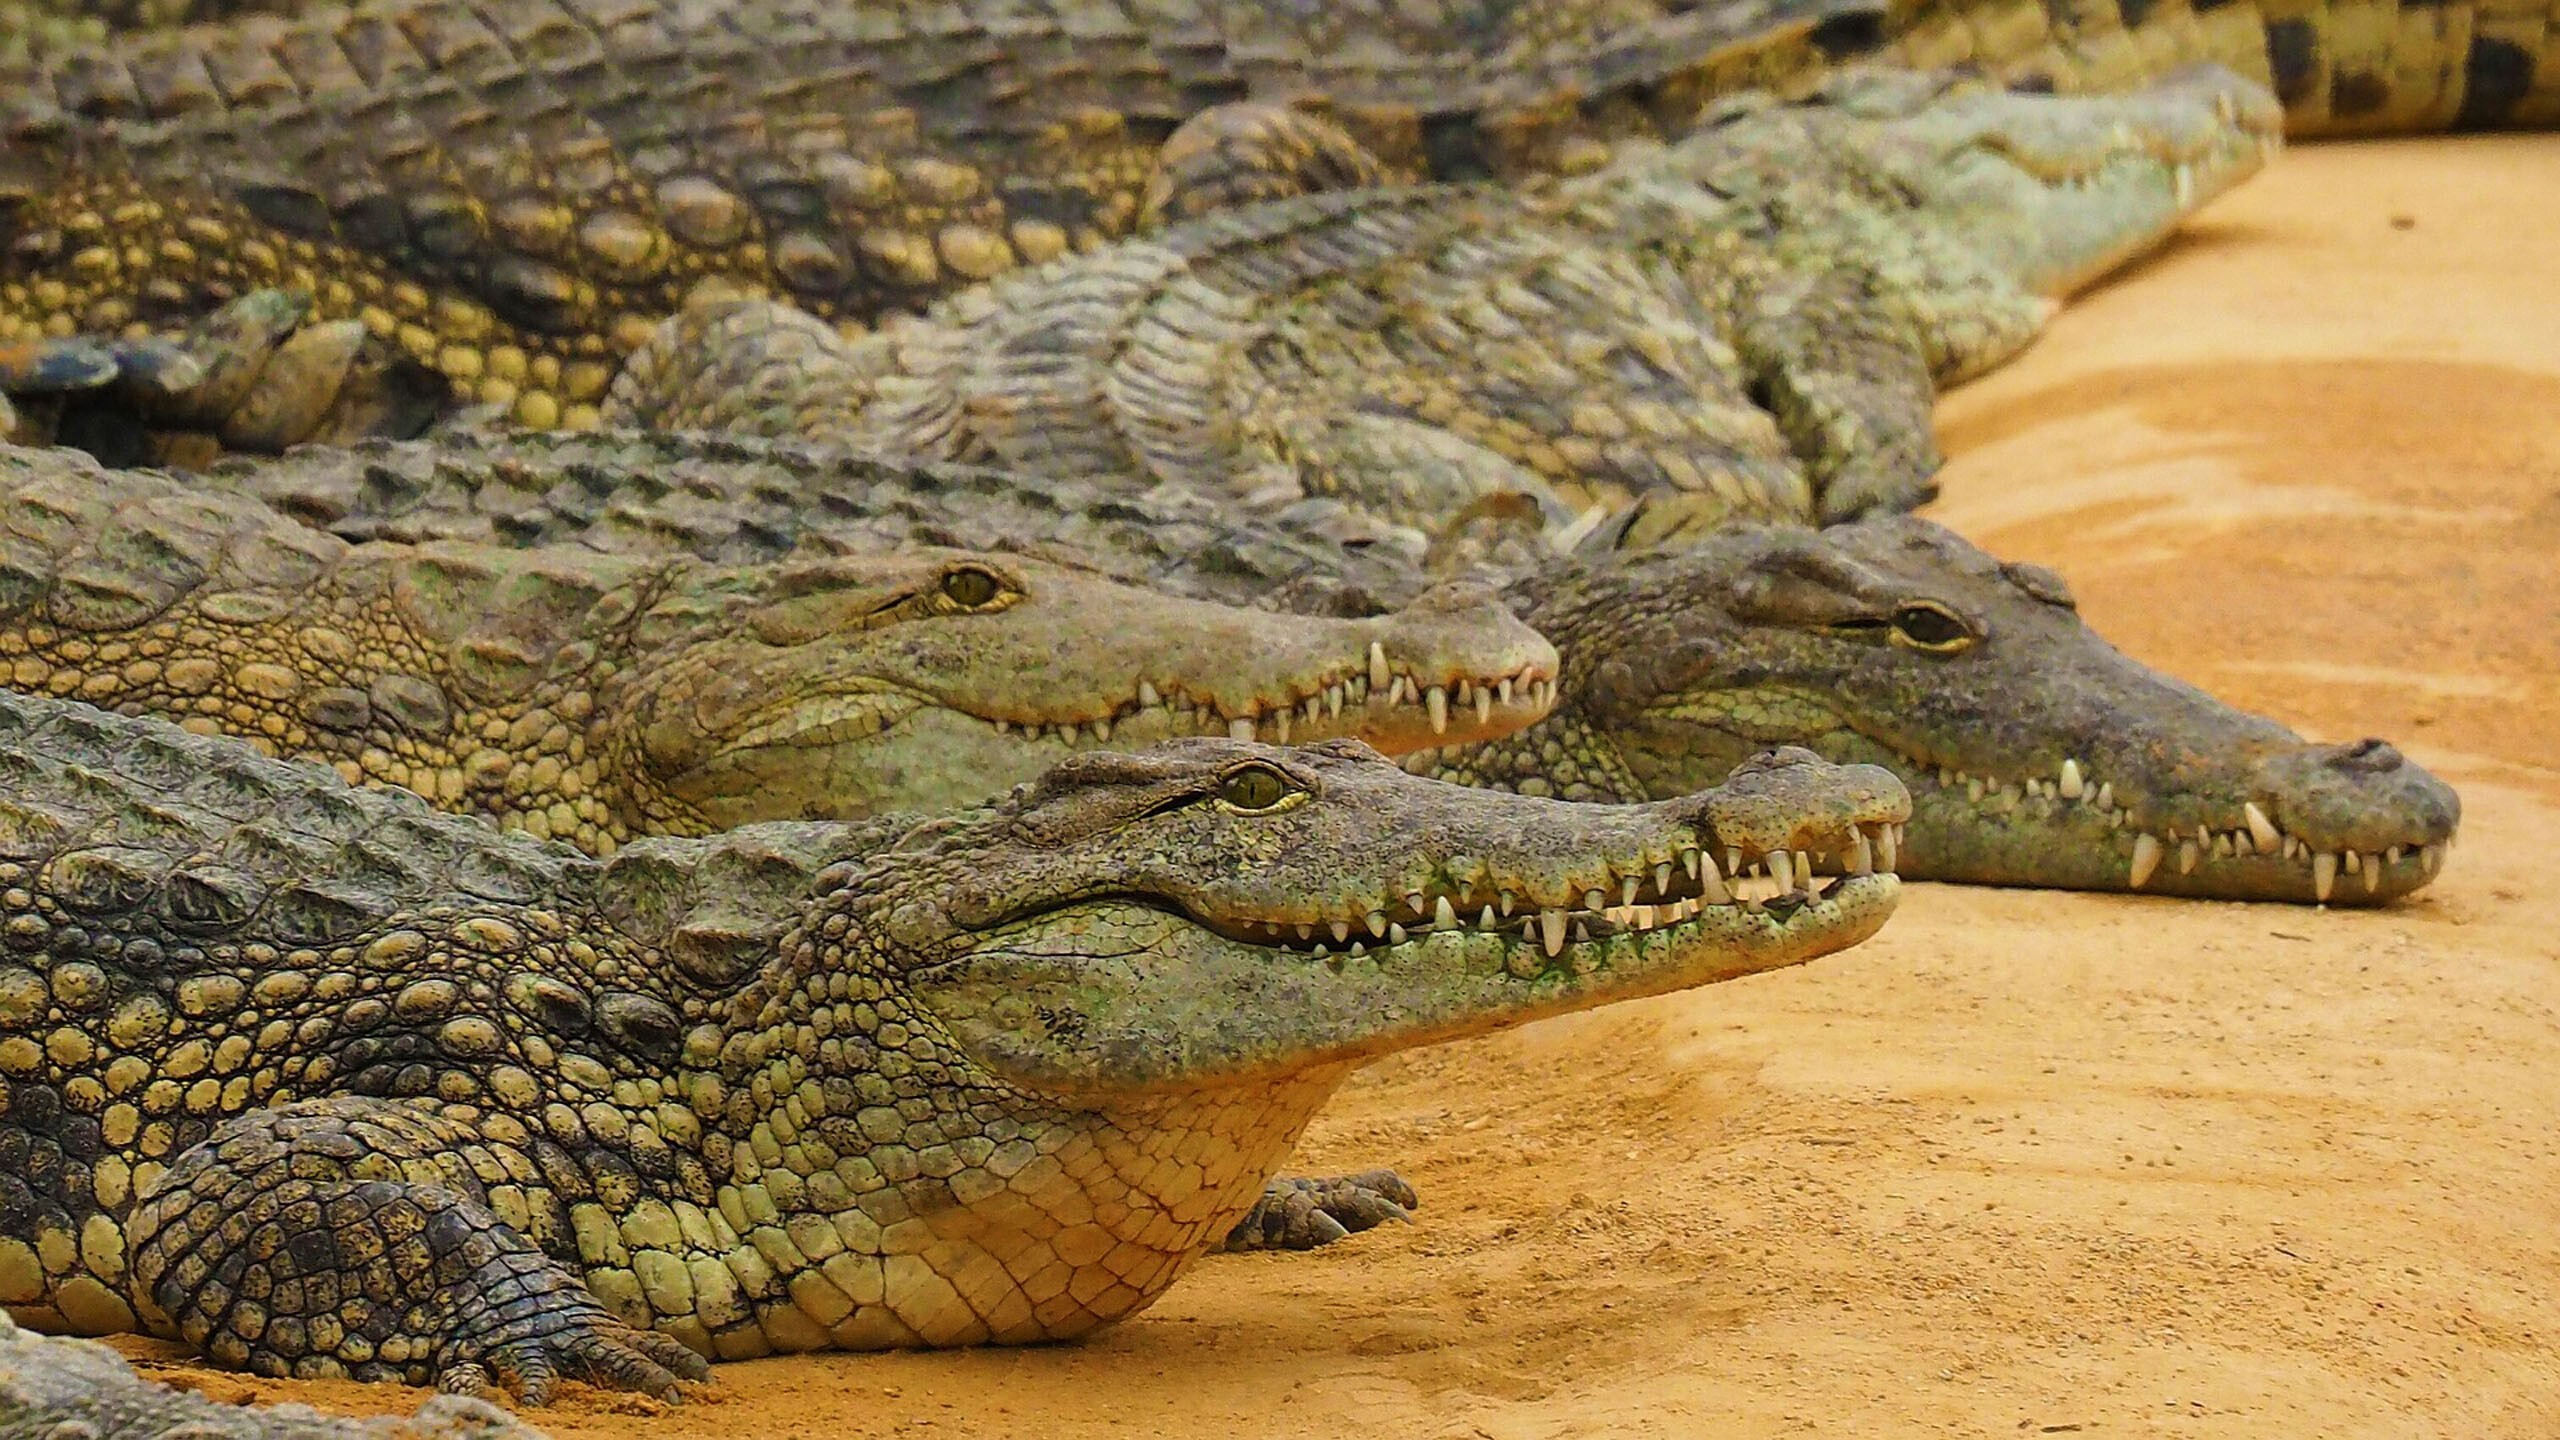 Нильский крокодил относится к пресмыкающимся